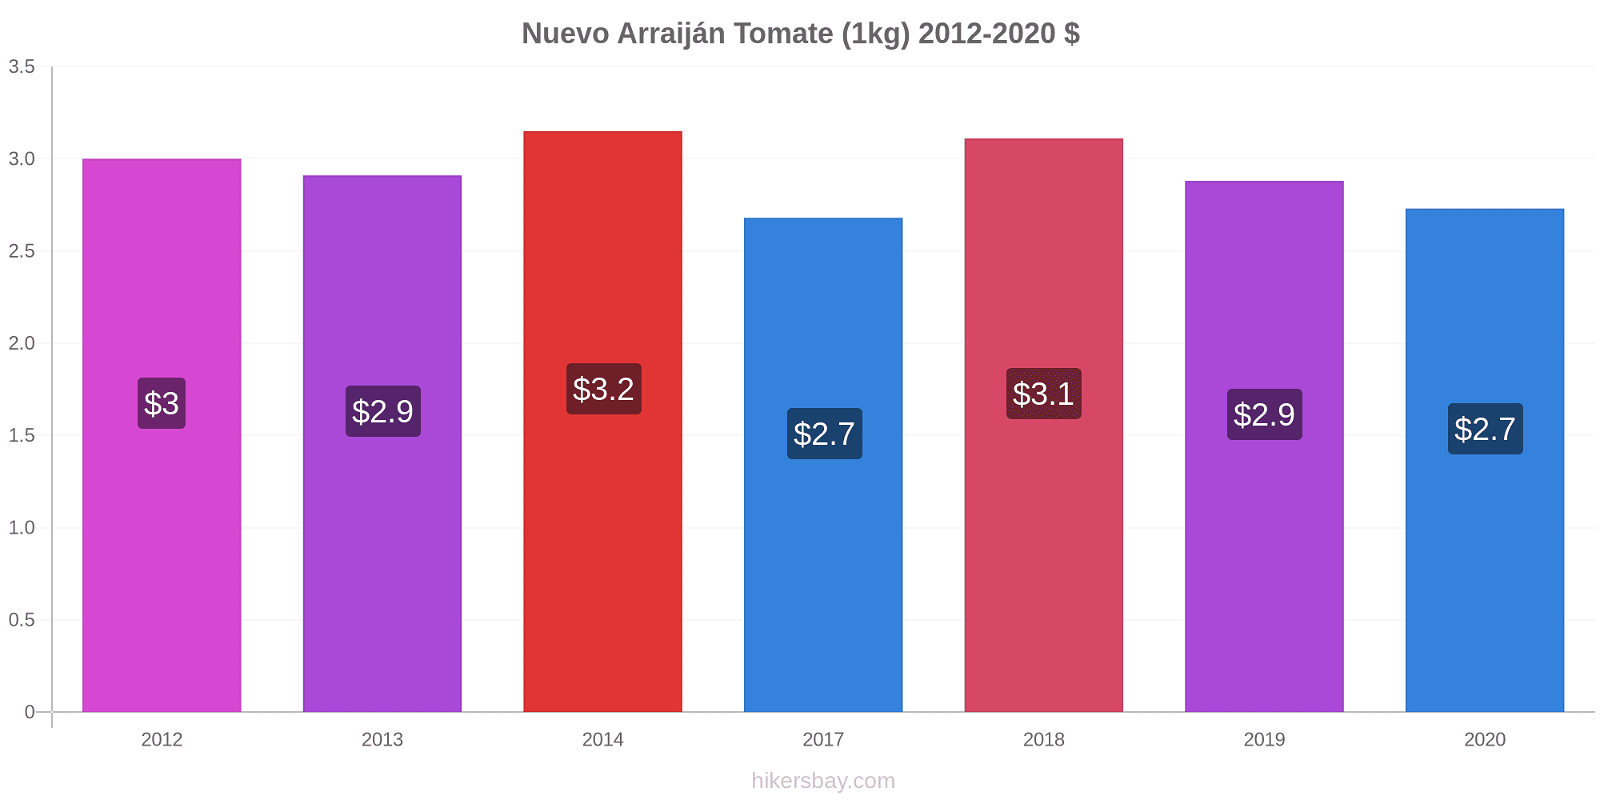 Nuevo Arraiján variação de preço Tomate (1kg) hikersbay.com